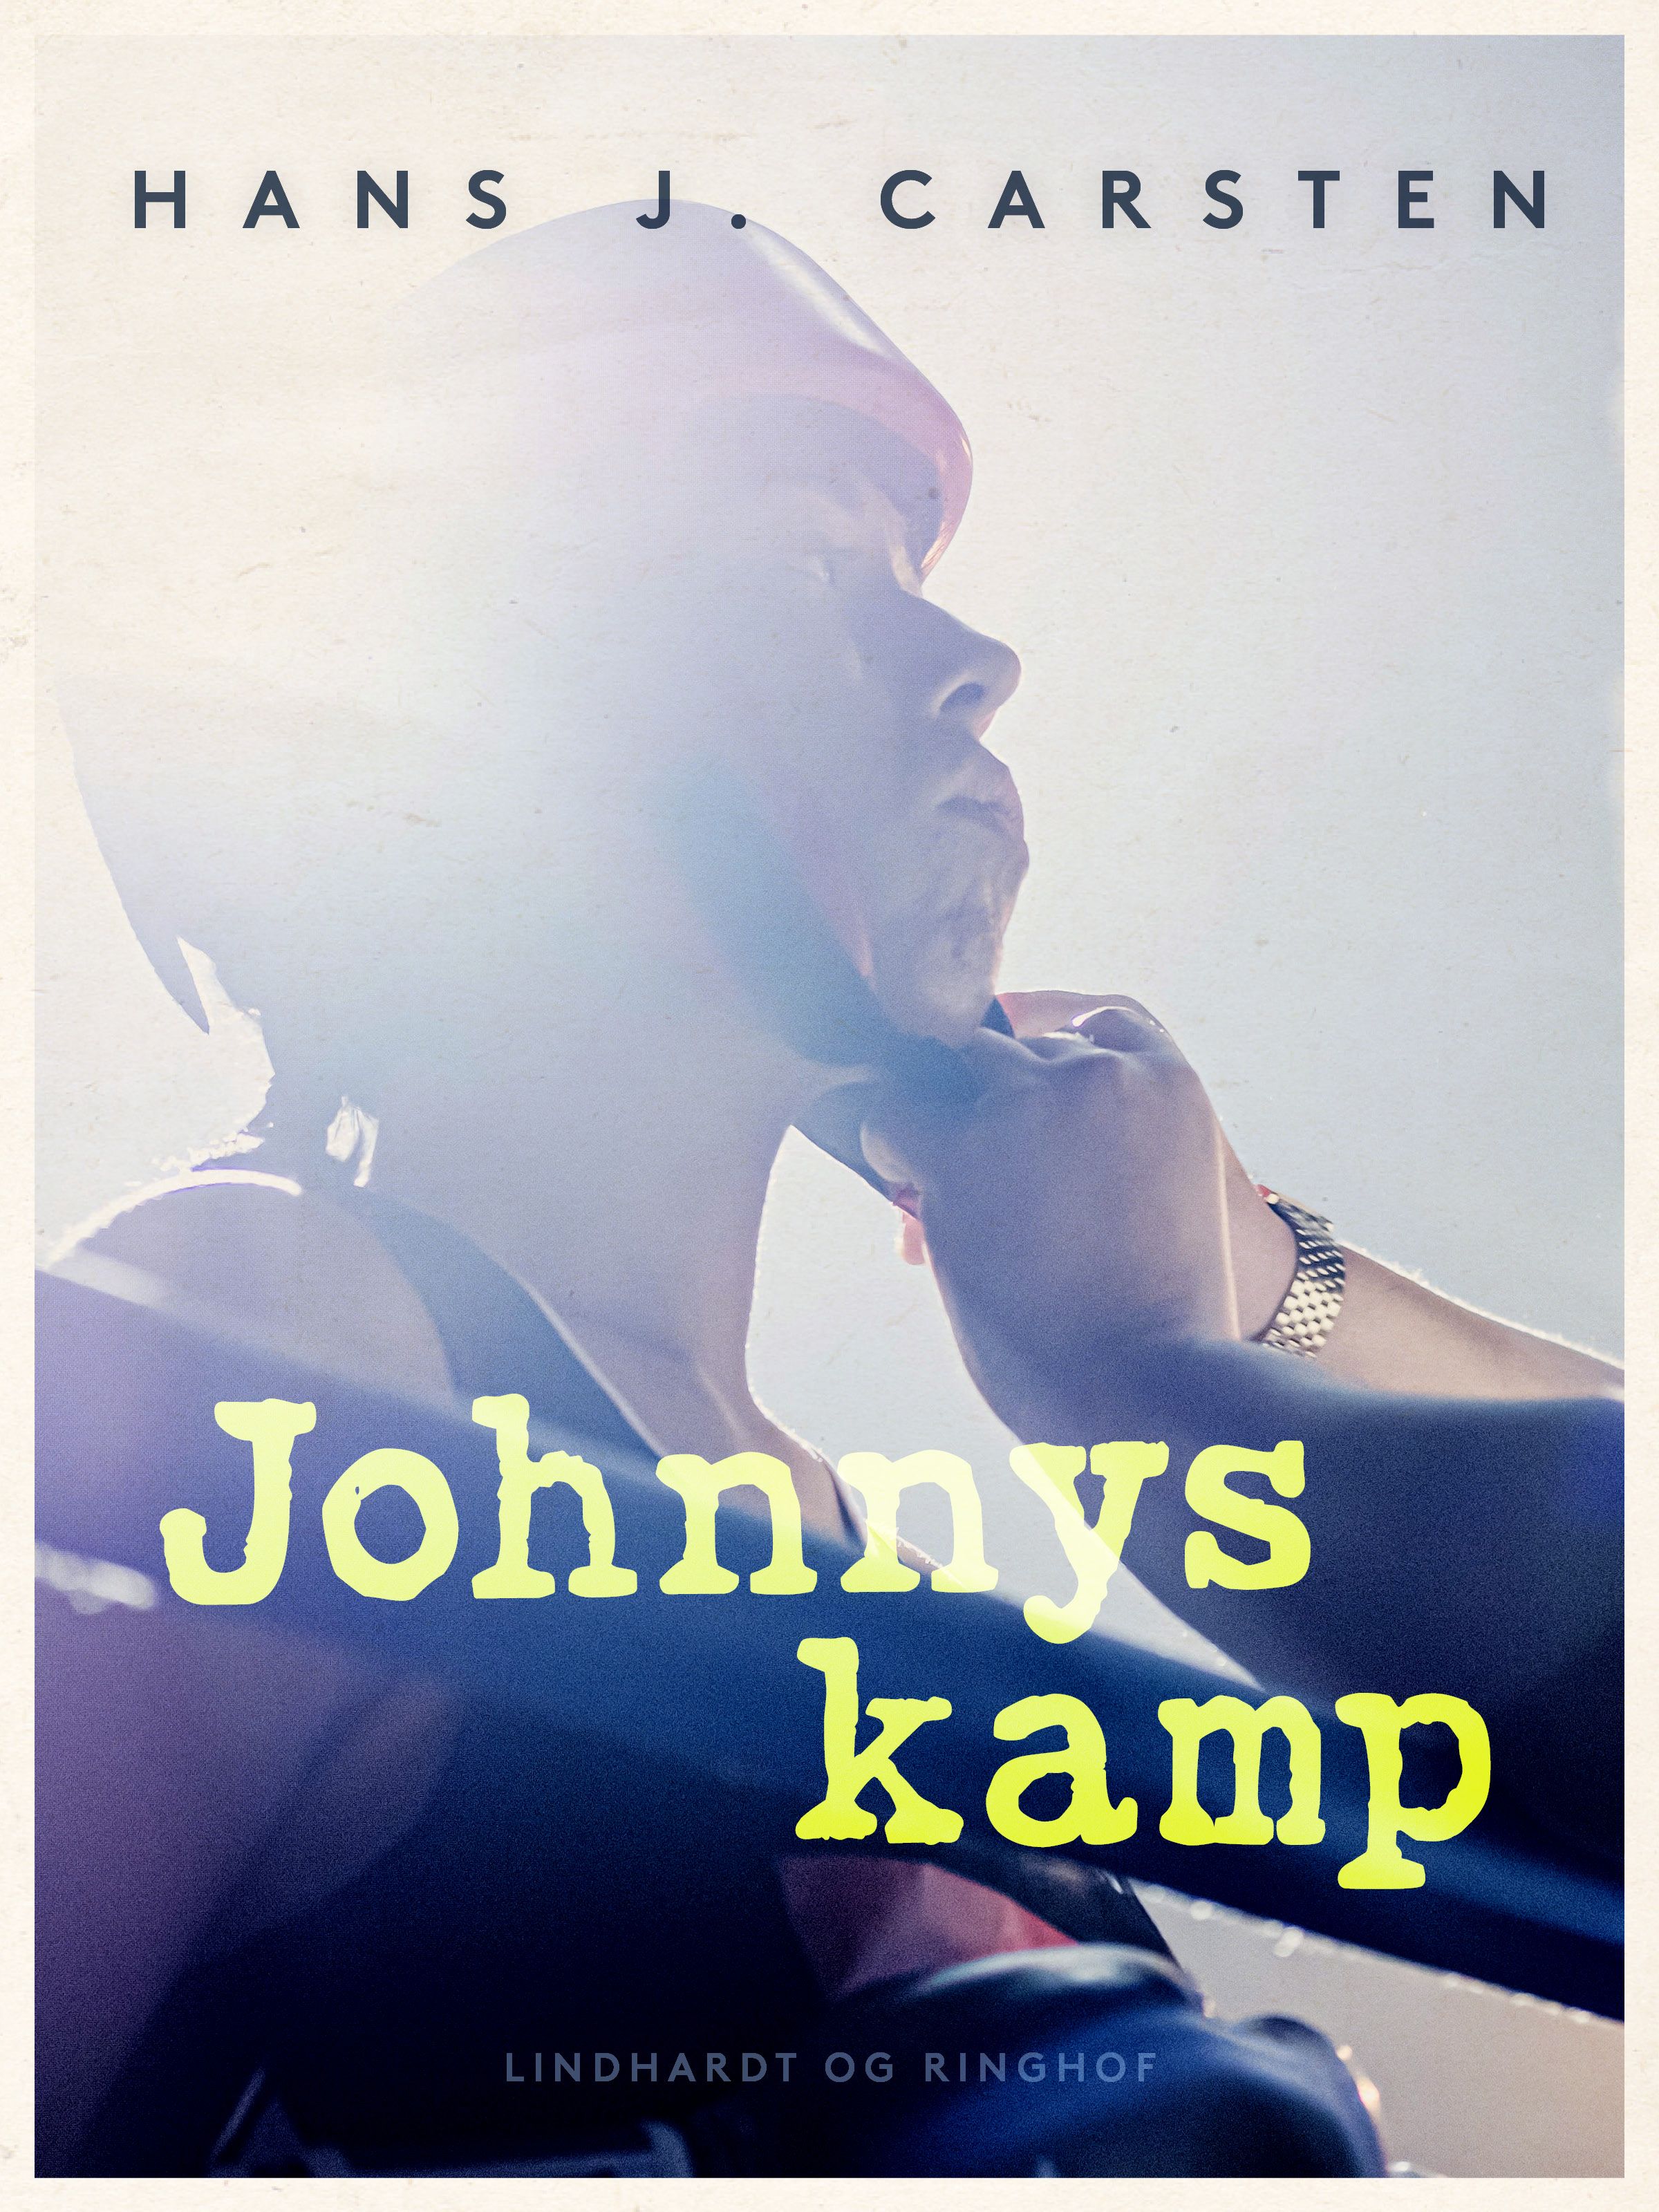 Johnnys kamp, e-bog af Hans Jakob Helms, Karsten Studstrup